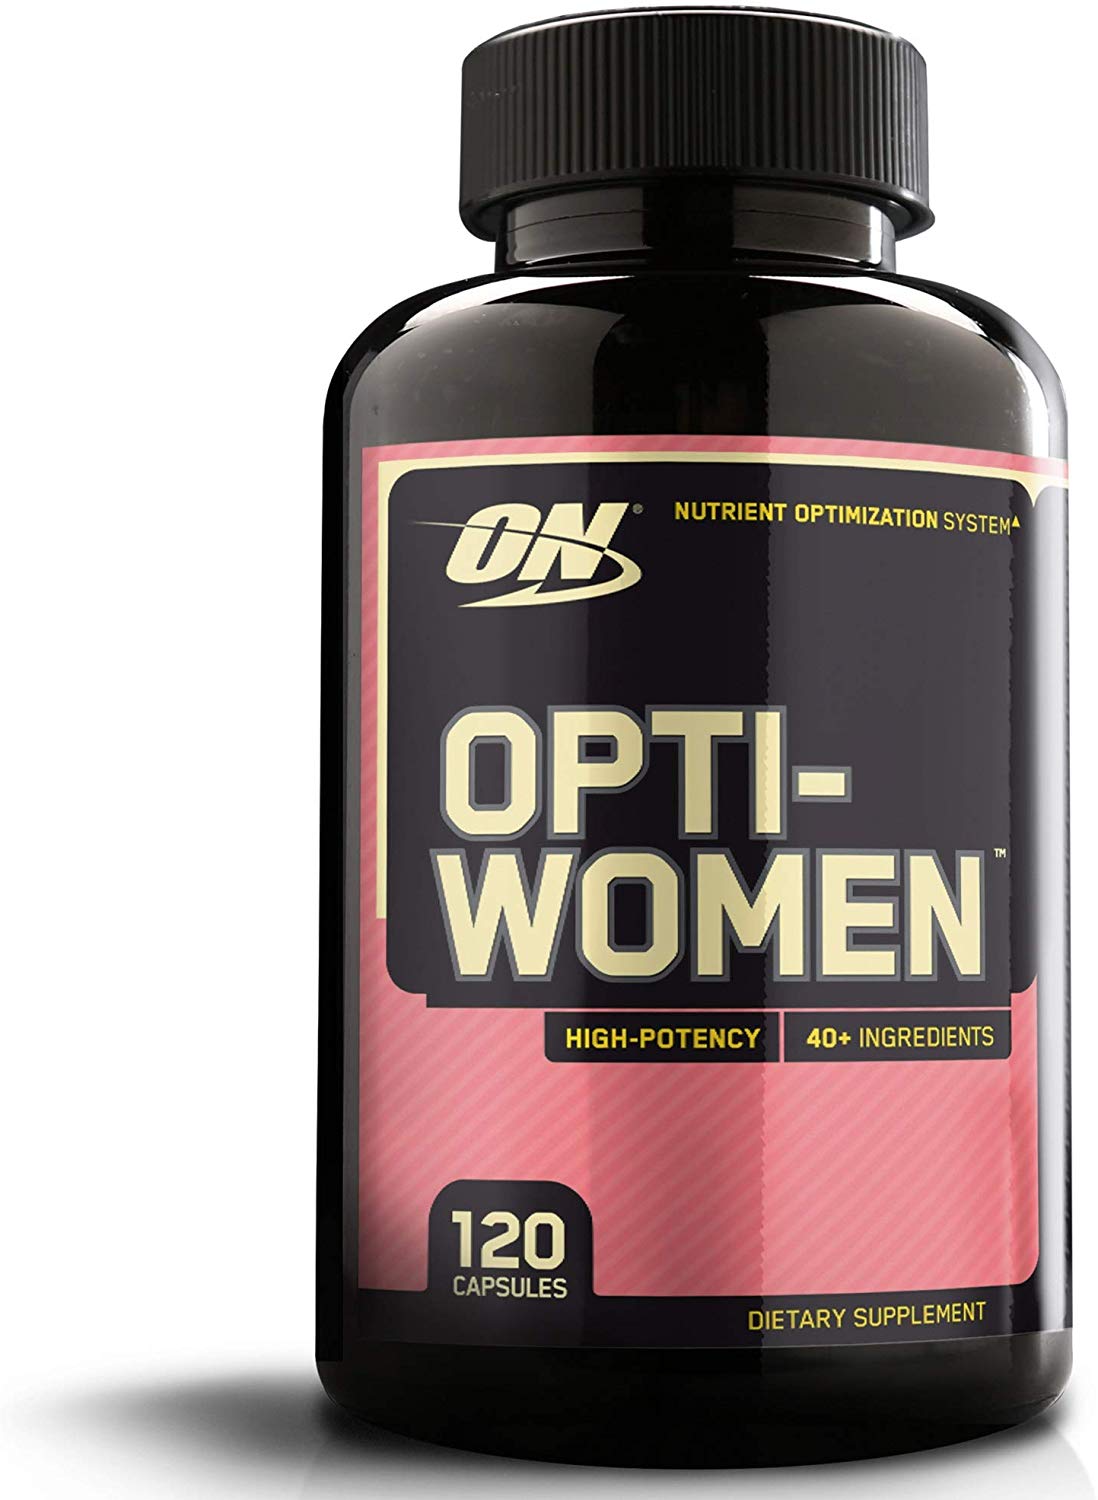 Bottle of Opti-Women